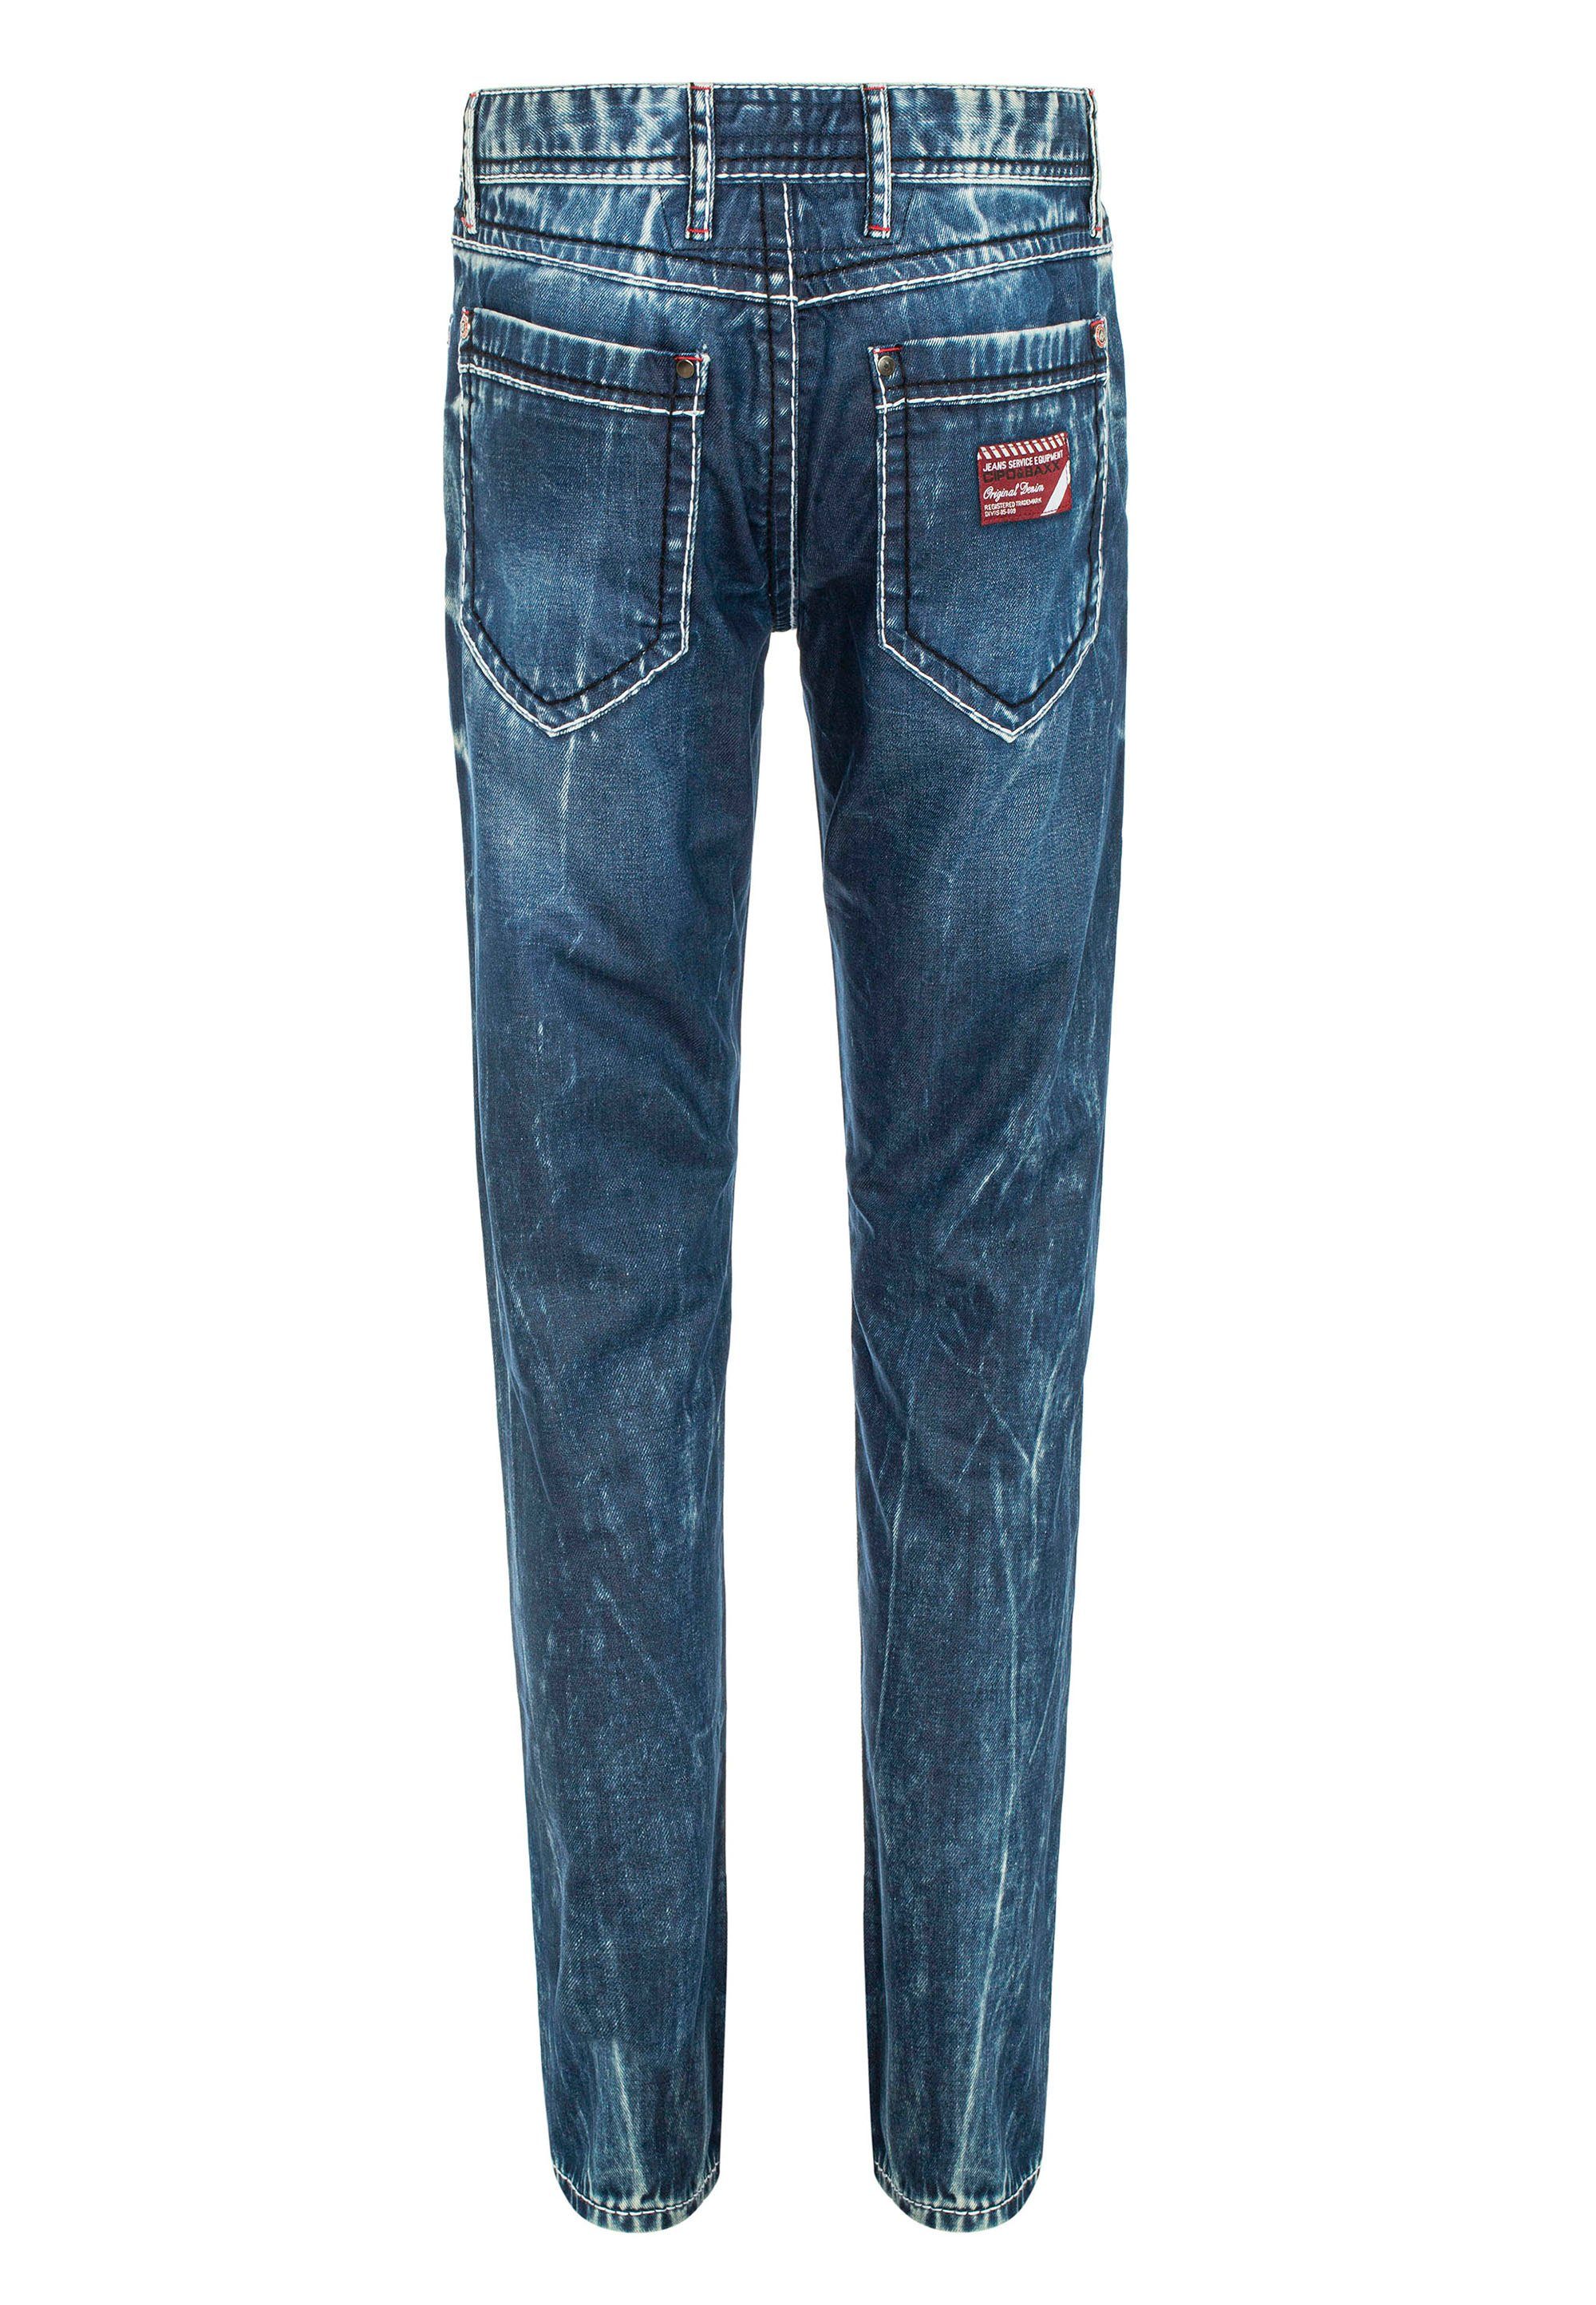 Cipo & Straight-Jeans Waschung mit extravaganter Baxx